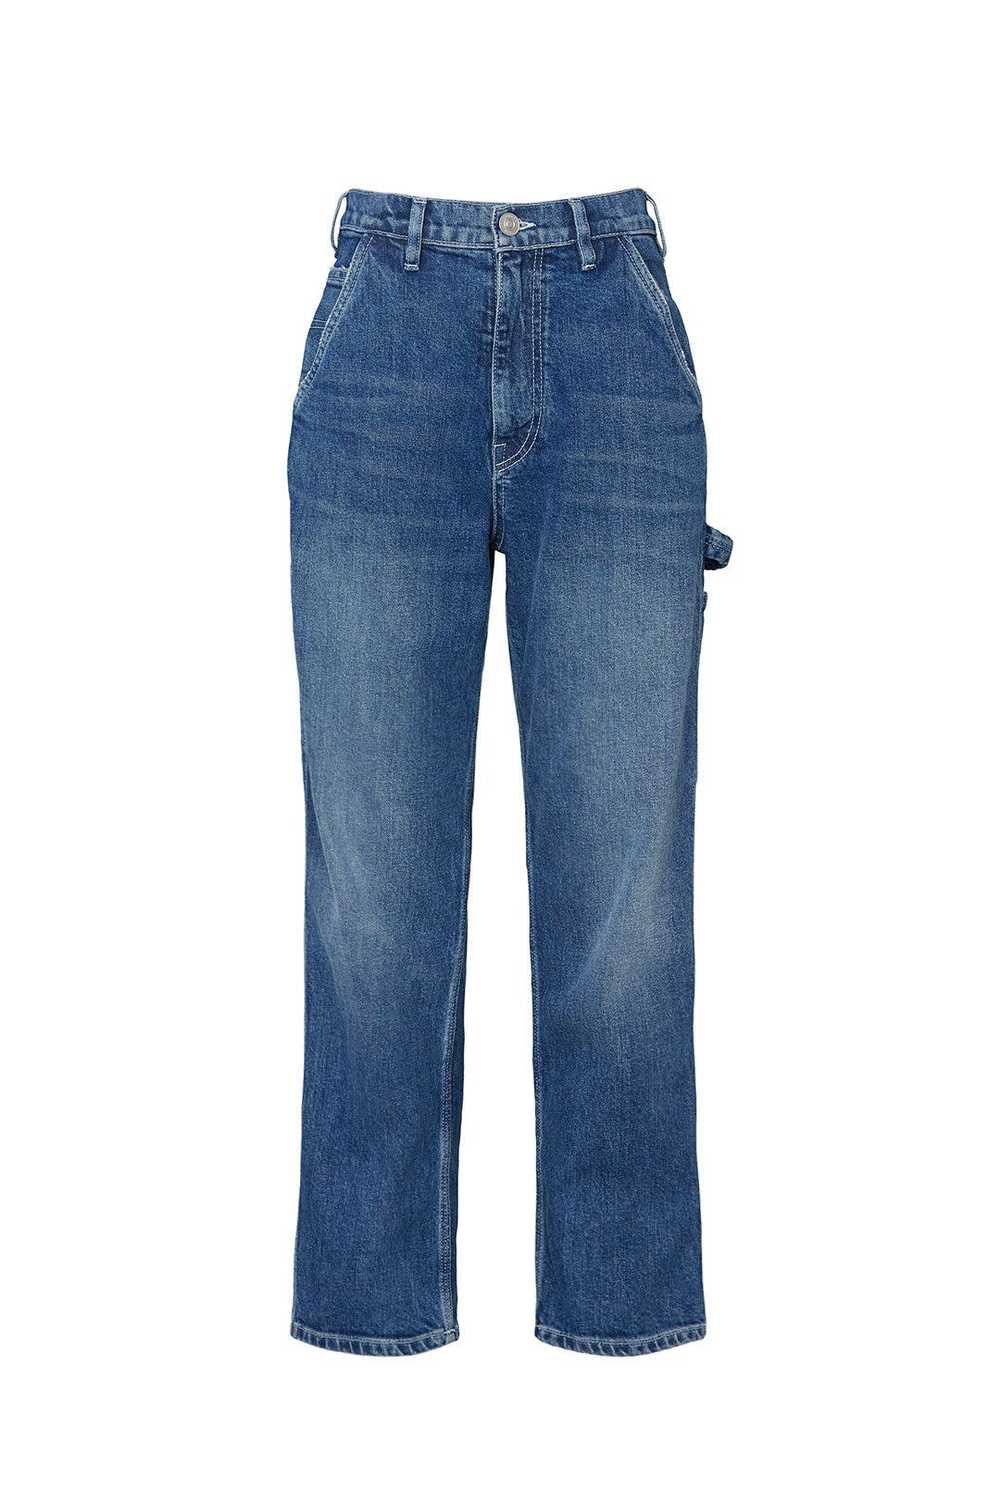 Hudson Carpenter Jeans - image 5